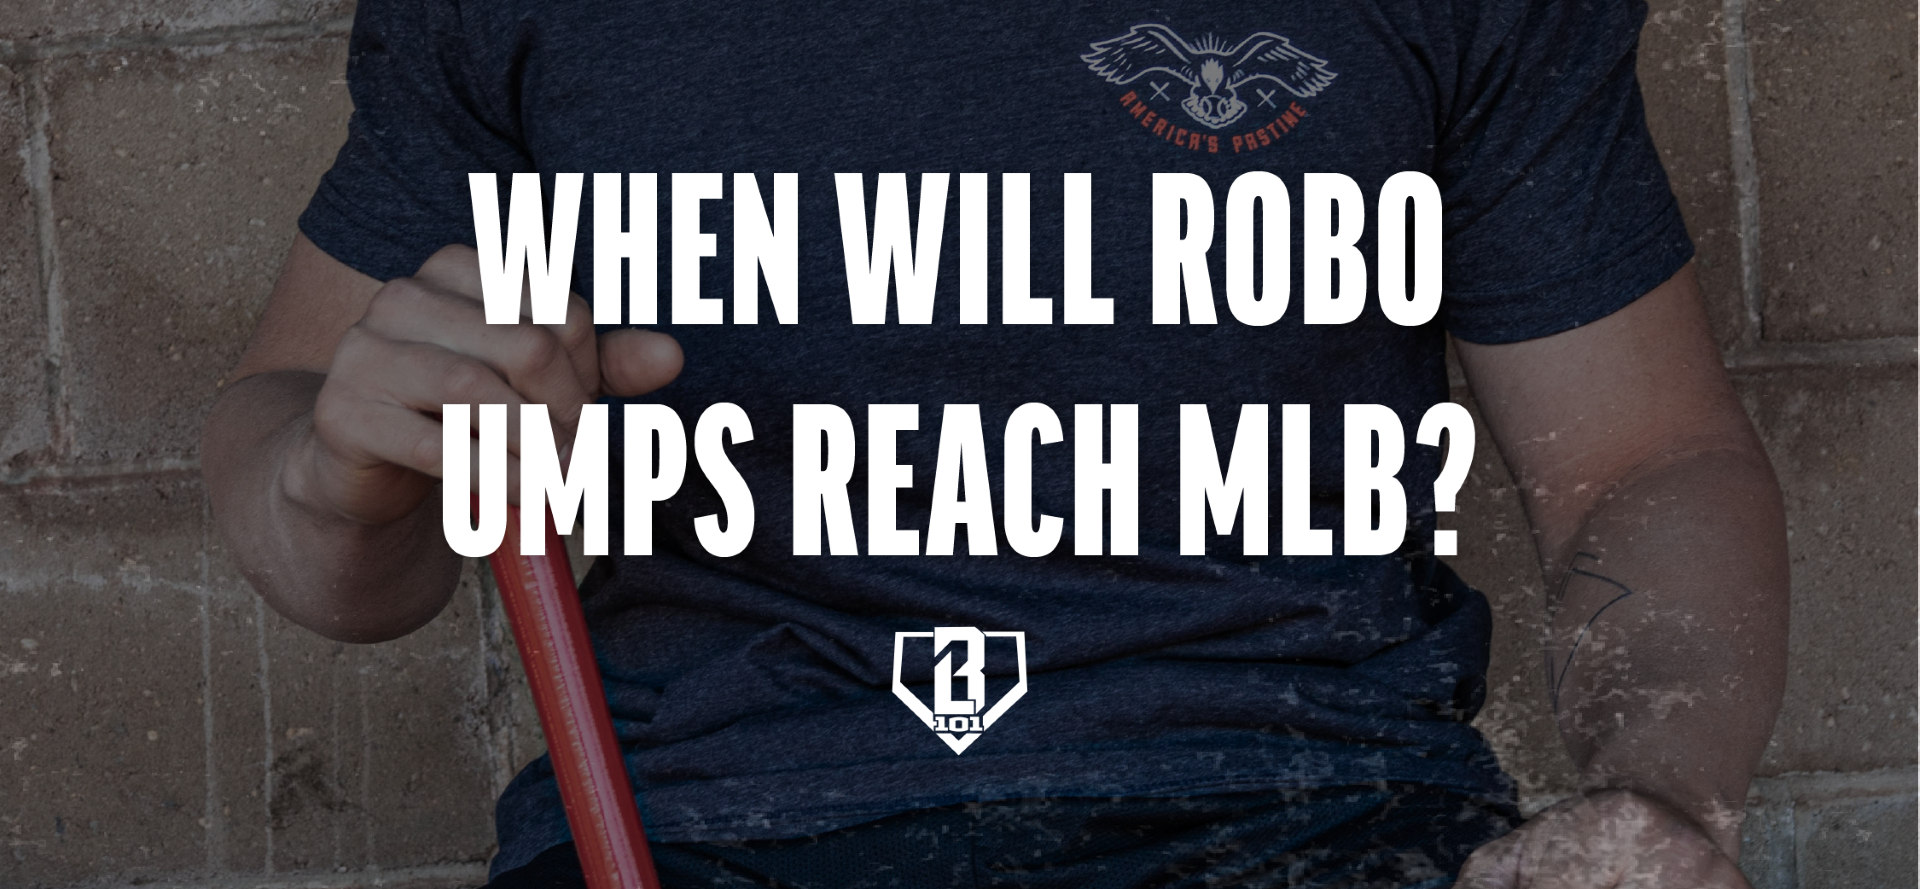 Most Popular Umpire Gear & Apparel of 2019 Minor League Baseball Umpires, Blog